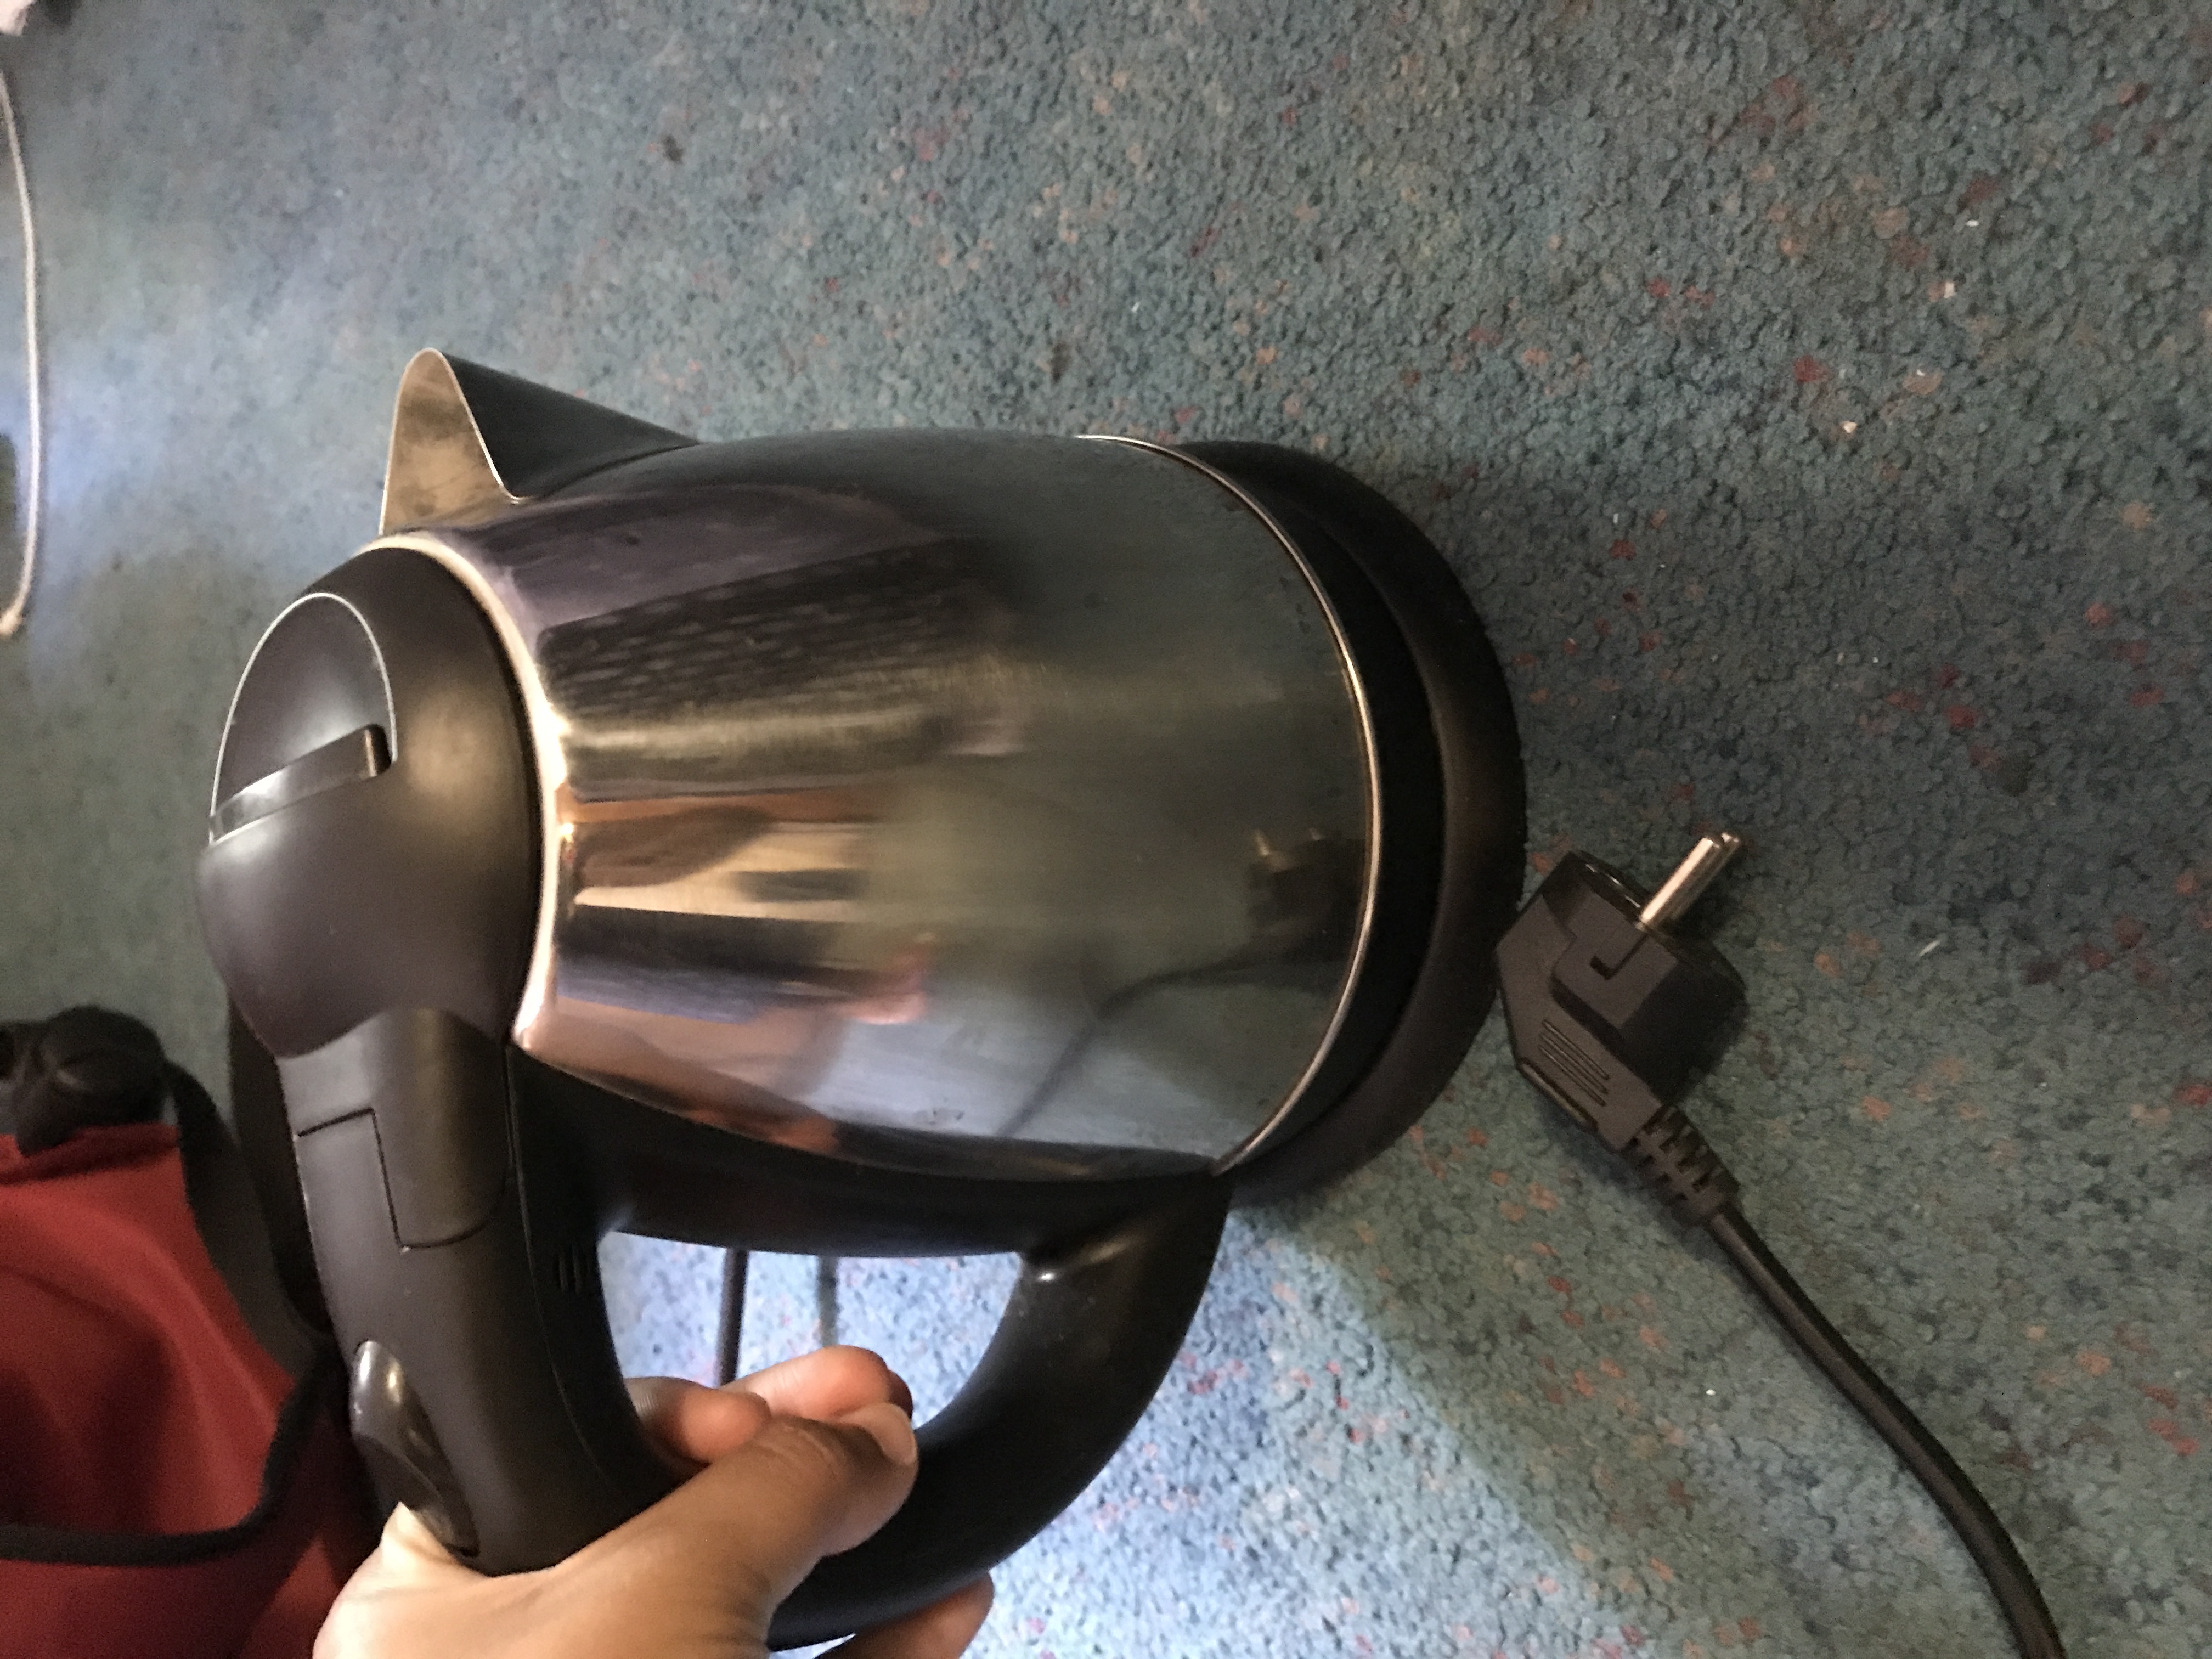 Very cute functional kettle